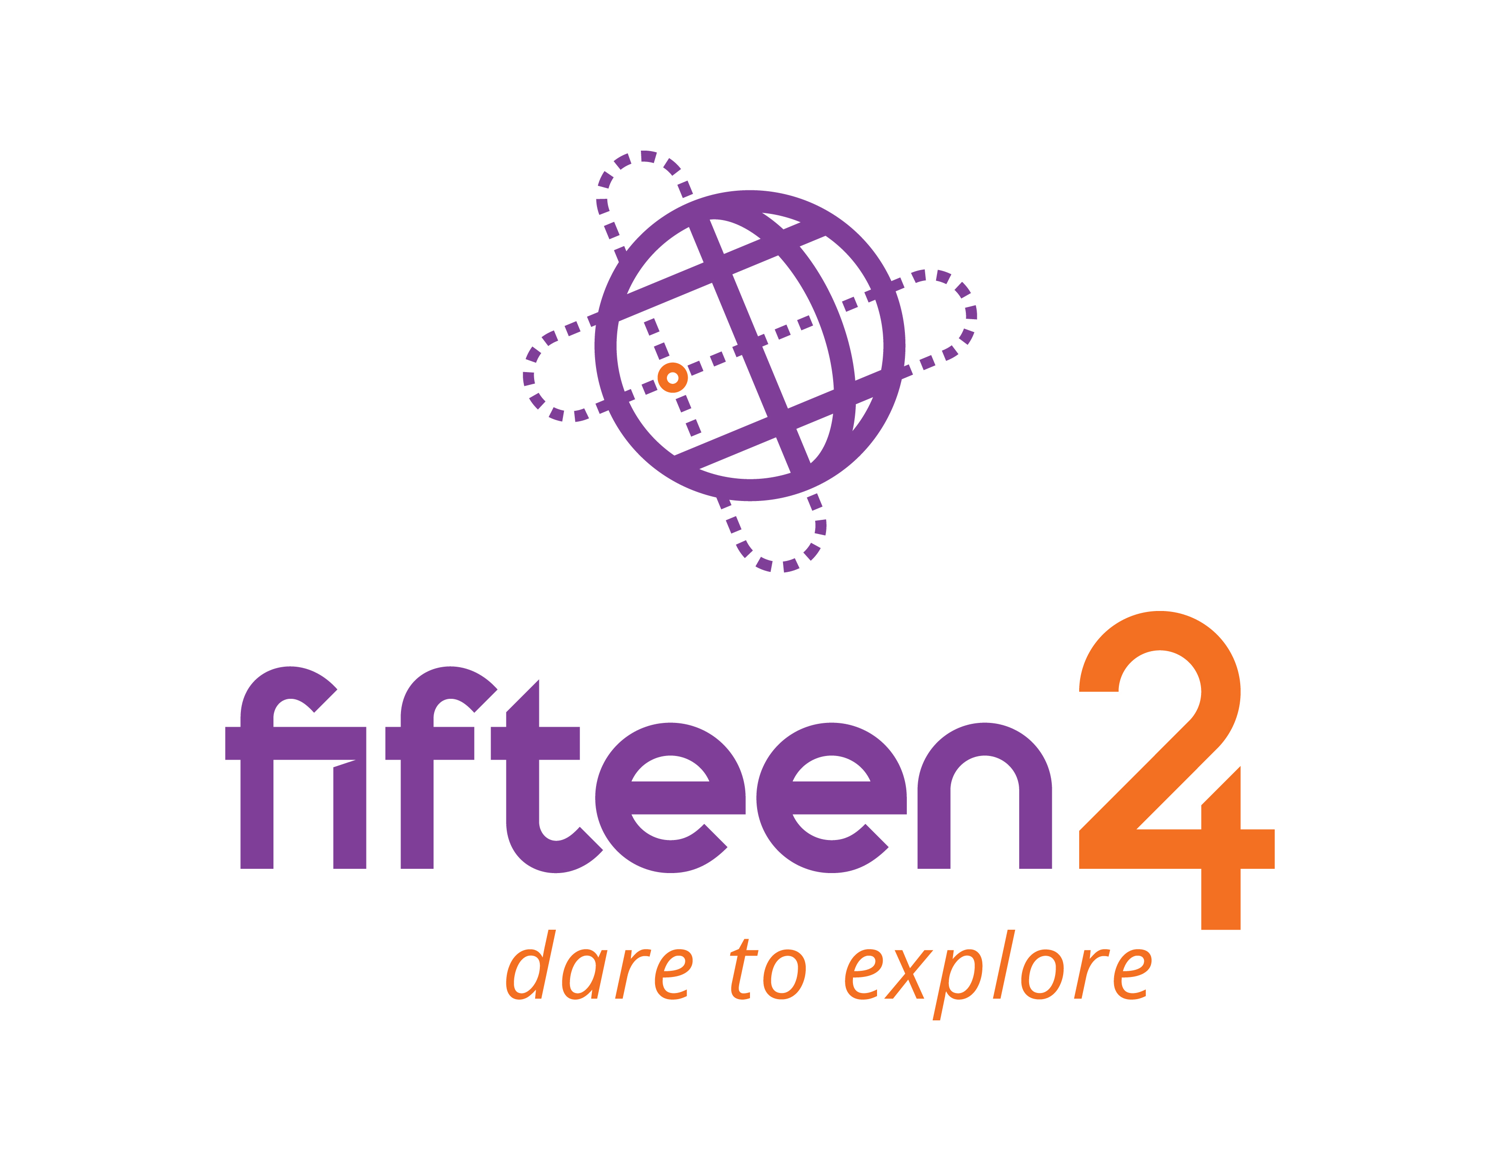 Logo Fifteen24